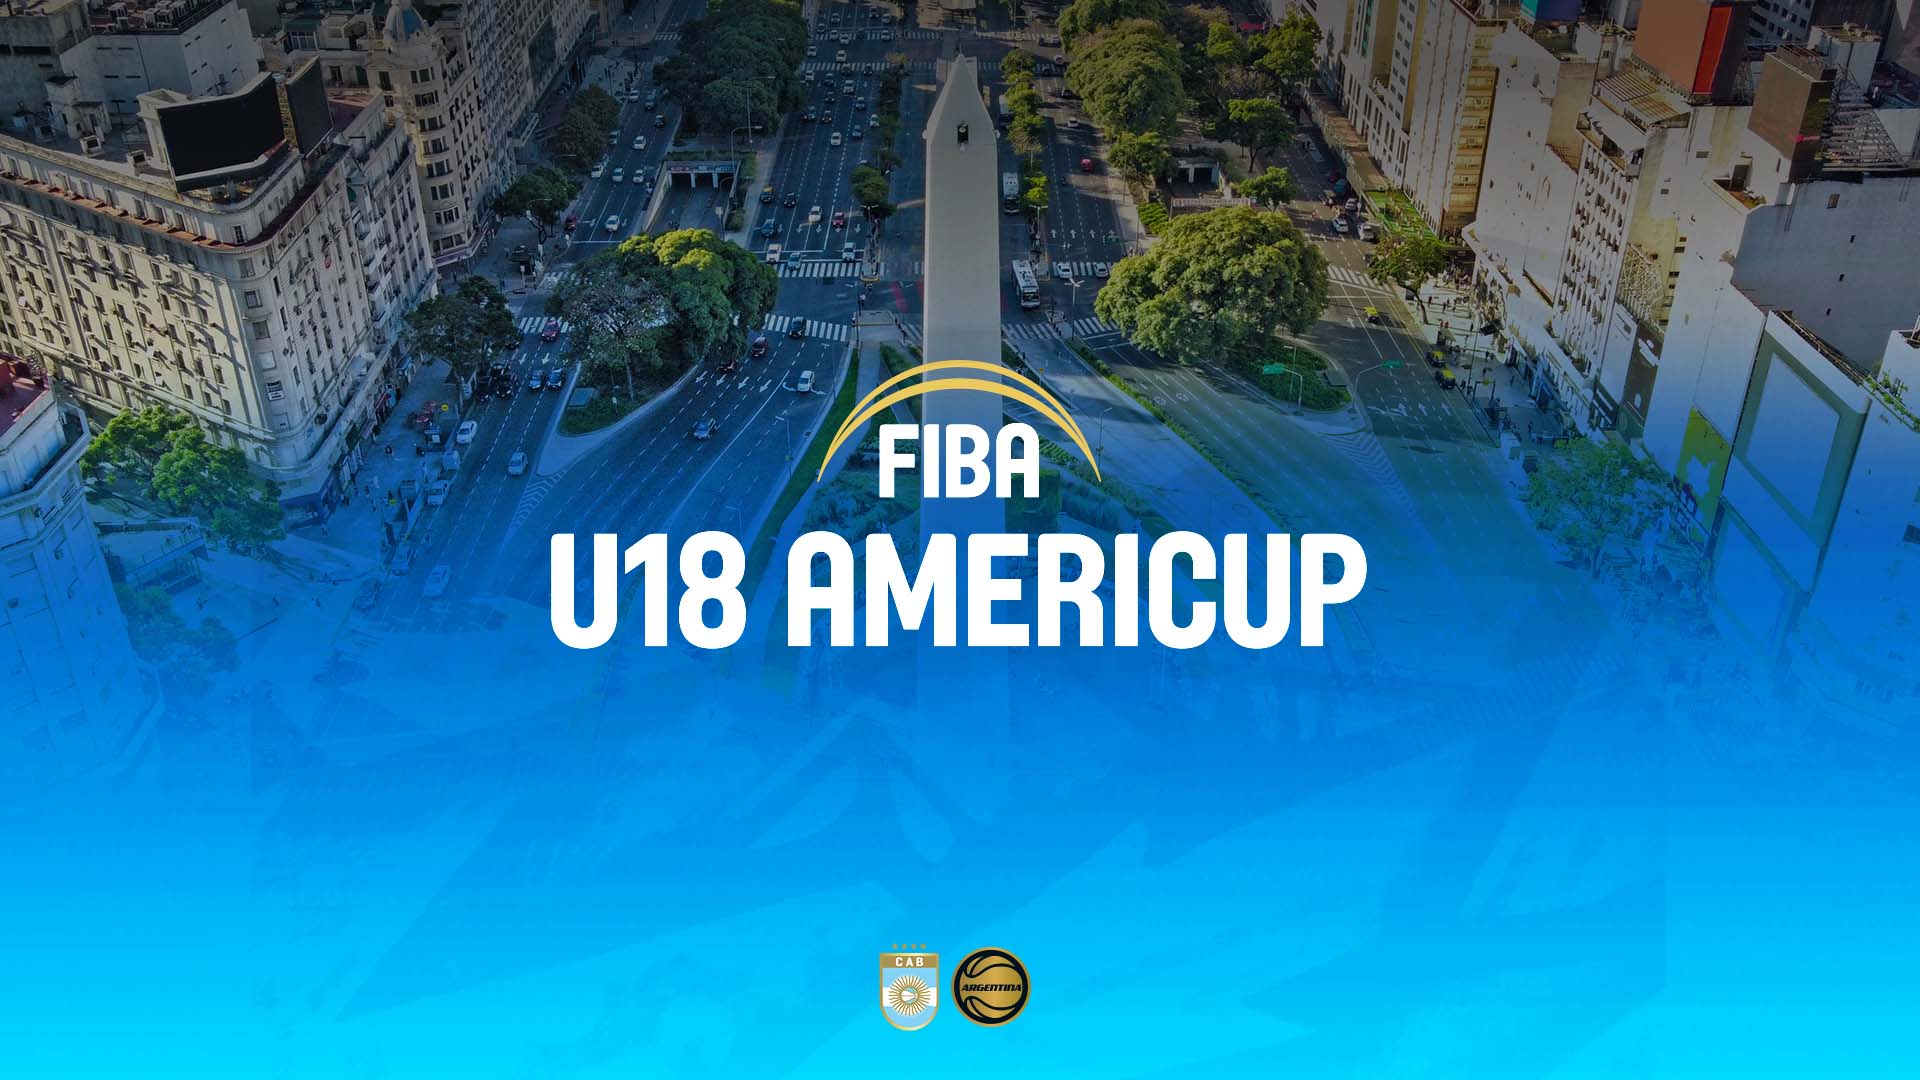 Abierto el proceso de acreditación de prensa para el AmeriCup FIBA U18 masculino